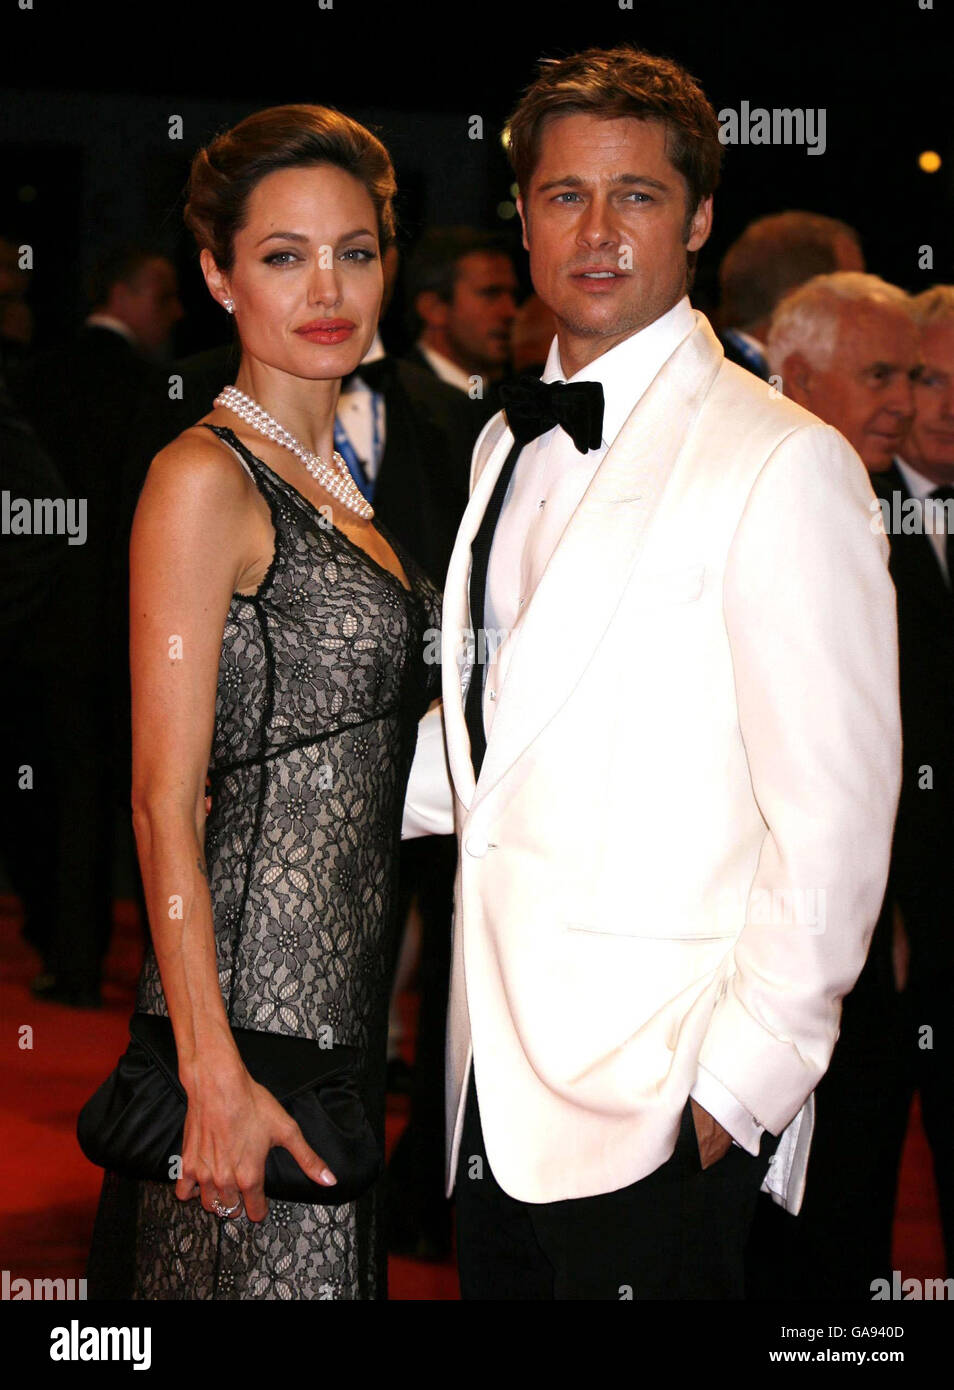 AP OUT Brad Pitt und Angelina Jolie kommen zur Premiere von "The Attentat of Jesse James" beim Filmfestival in Venedig, Italien. Bilddatum: Sonntag, 2. September 2007. Bildnachweis sollte lauten: Yui Mok/PA Wire Stockfoto